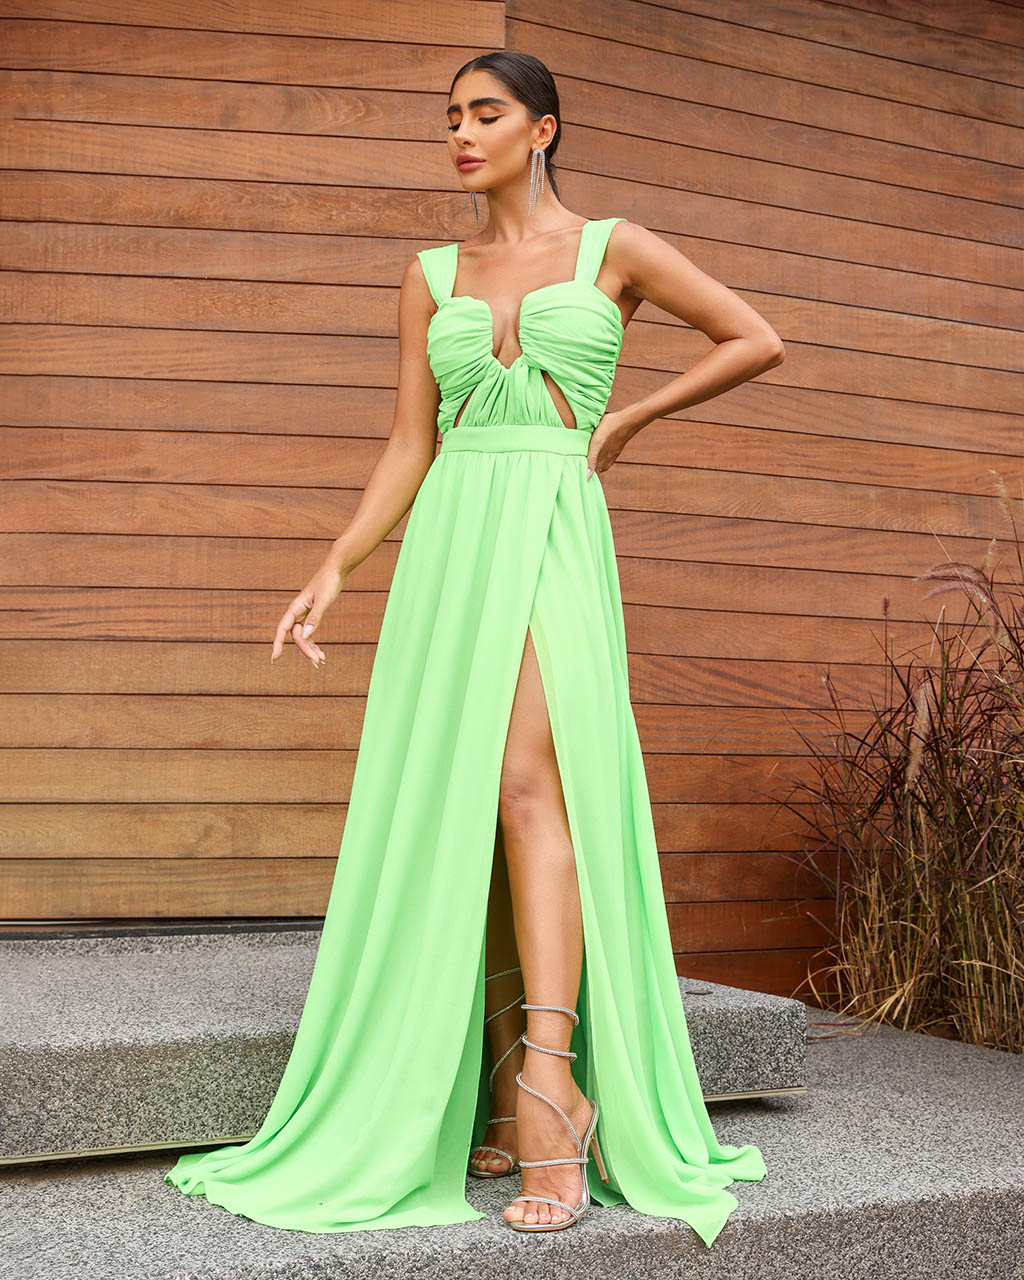 Vestido Longo Verde Ariane - Empório NM